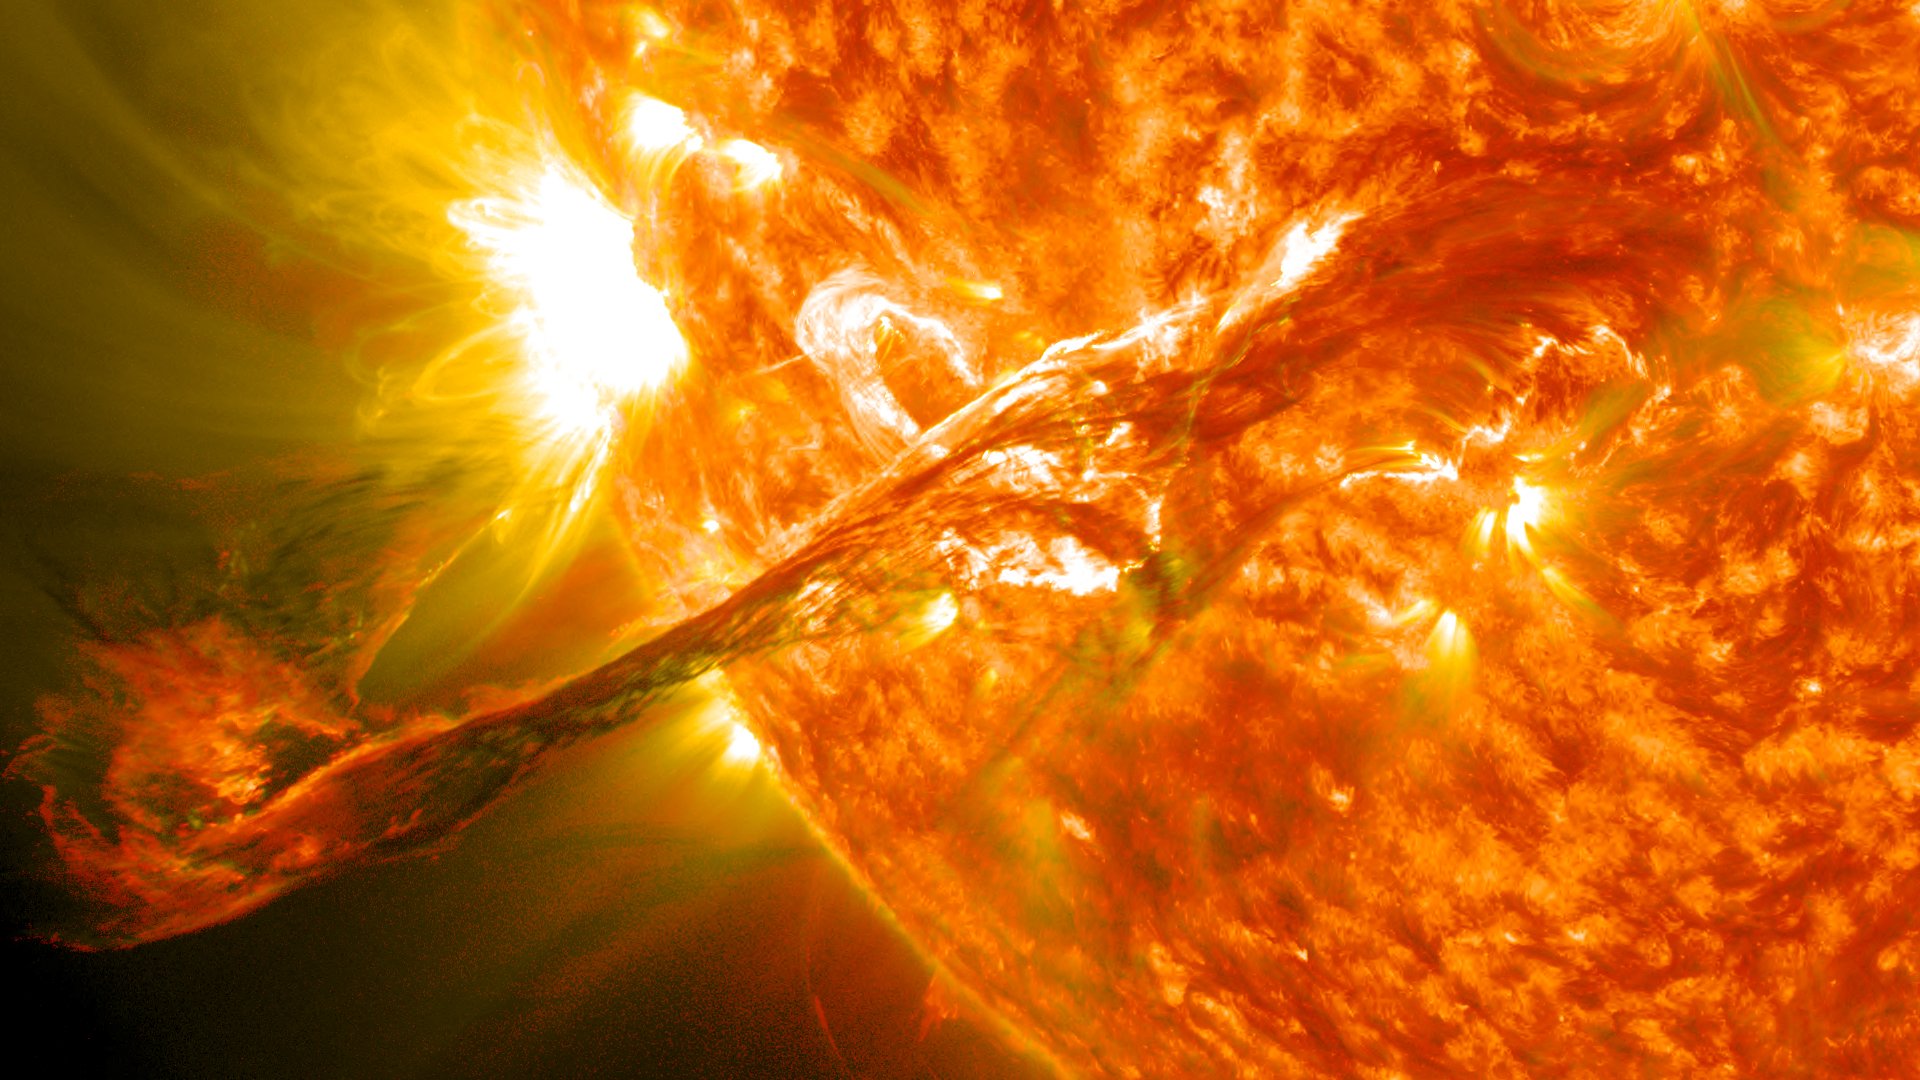 Tempesta solar el 23 d'abril? Una teoria viral preveu el despreniment de capes del sol